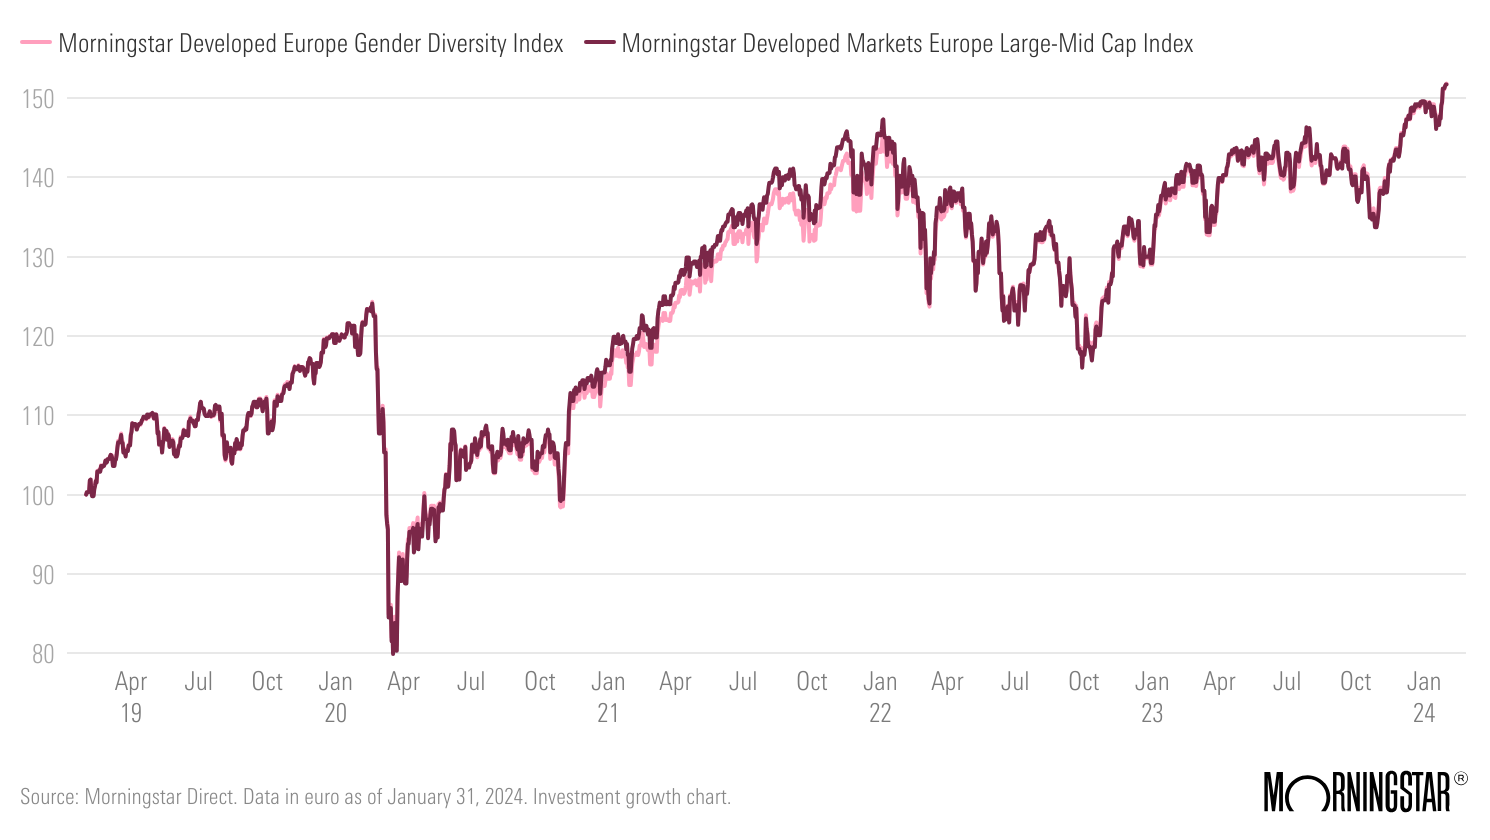 Developed Europe Gender Diversity Index vs. Developed Markets Europe Large-Mid Cap Index